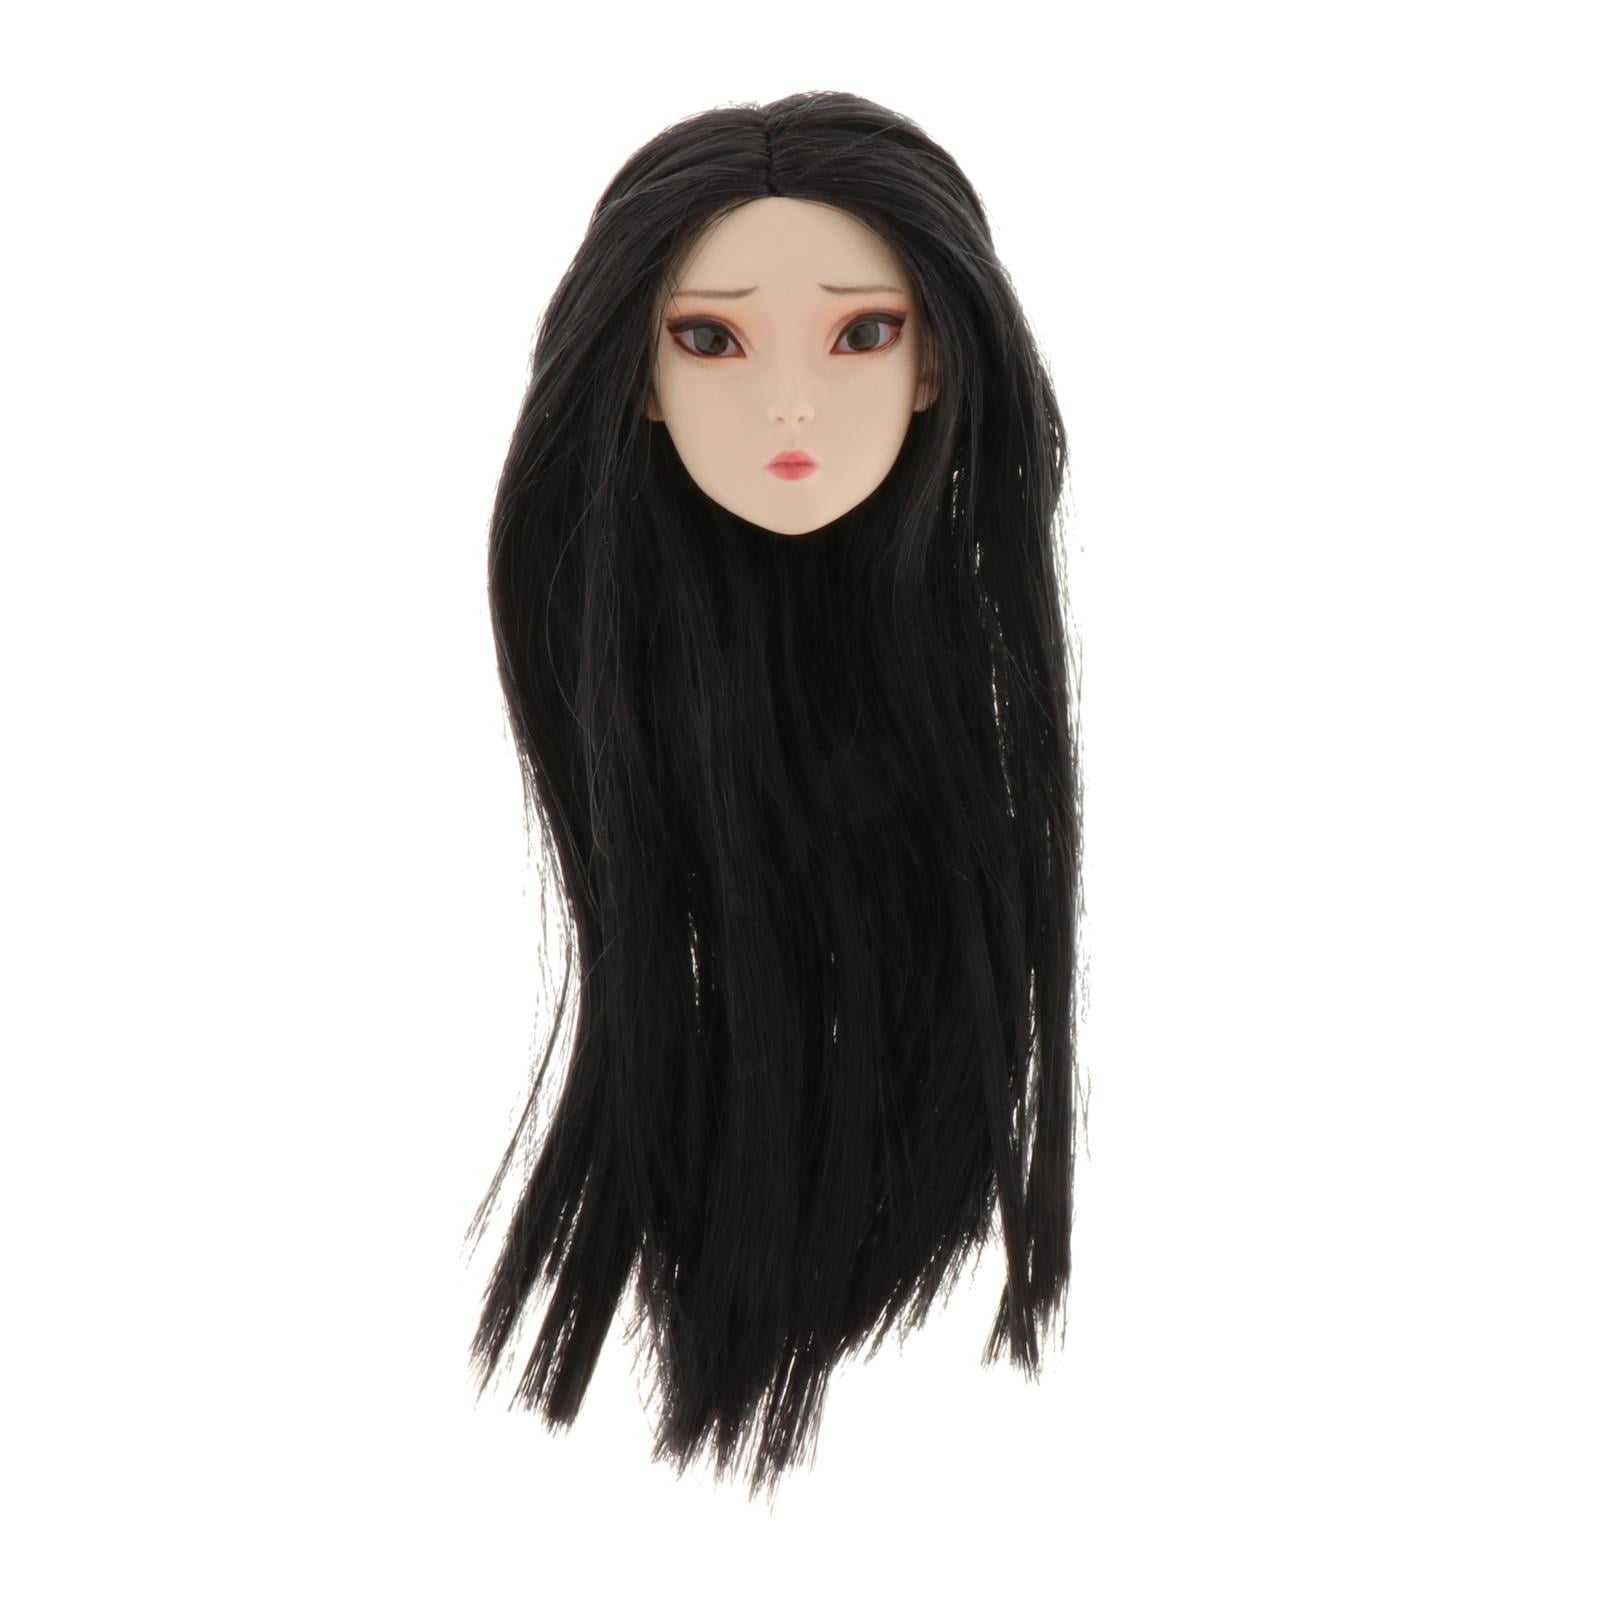 1/6 Beauty Asia Black Short Hair Head Sculpt Fit 12'' Action Figure Toy 